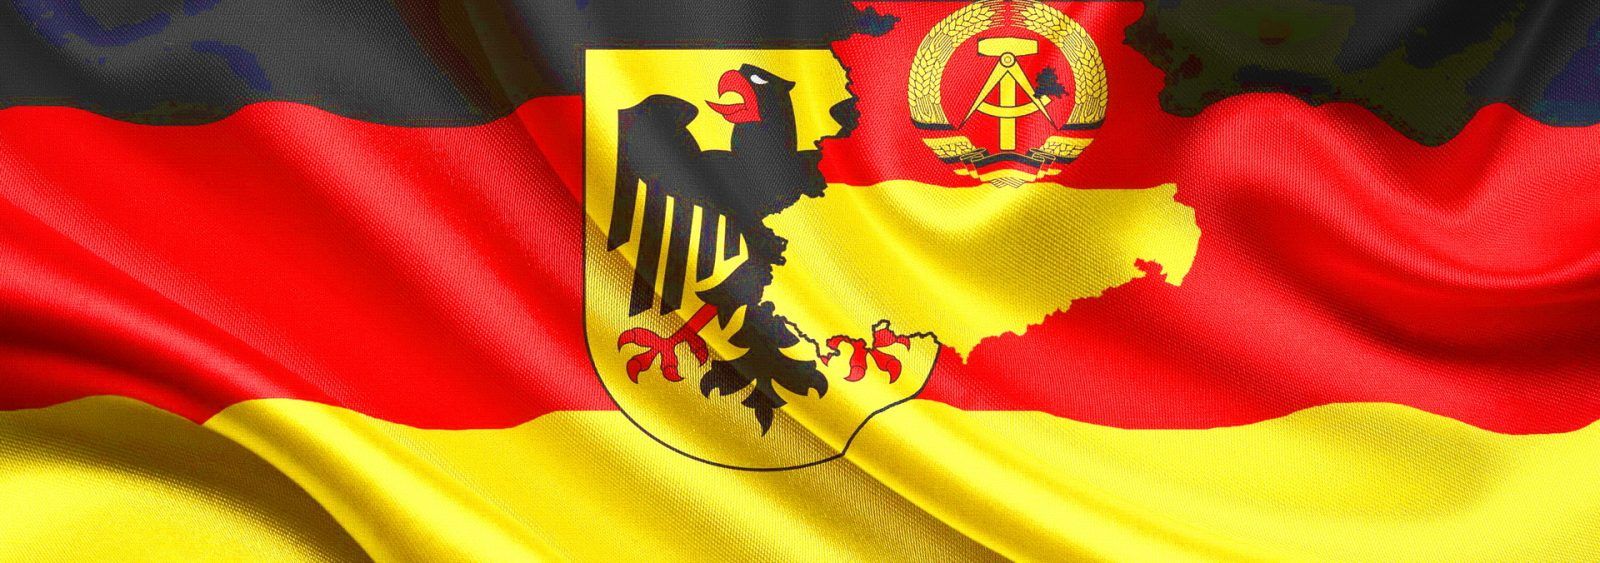 Премьер нового поколения... Флаг Федеративной Республики Германия